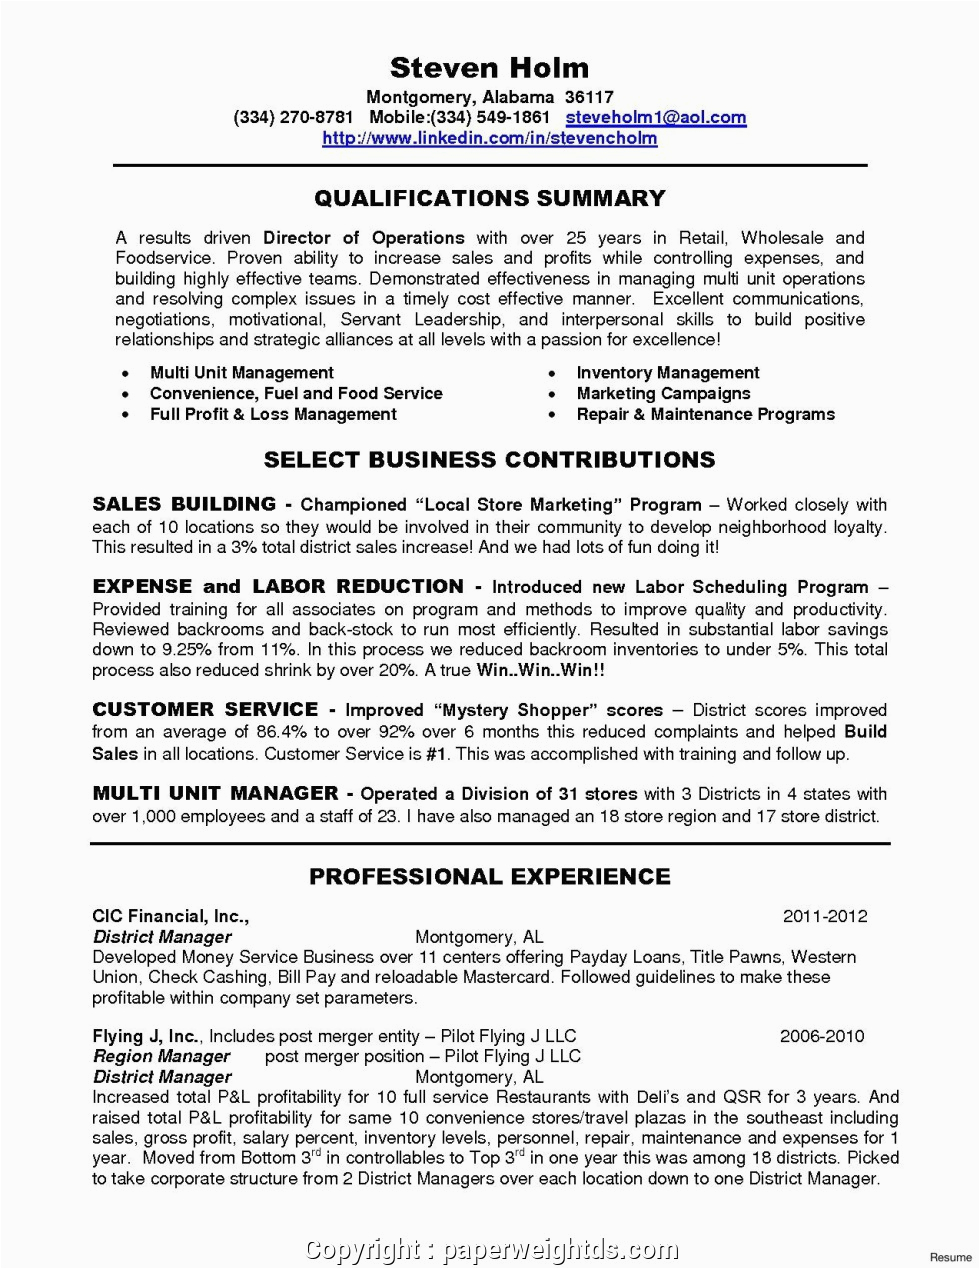 Restaurant General Manager Resume Sample Pdf Print Restaurant Manager Resume Sample Pdf Resume Samples